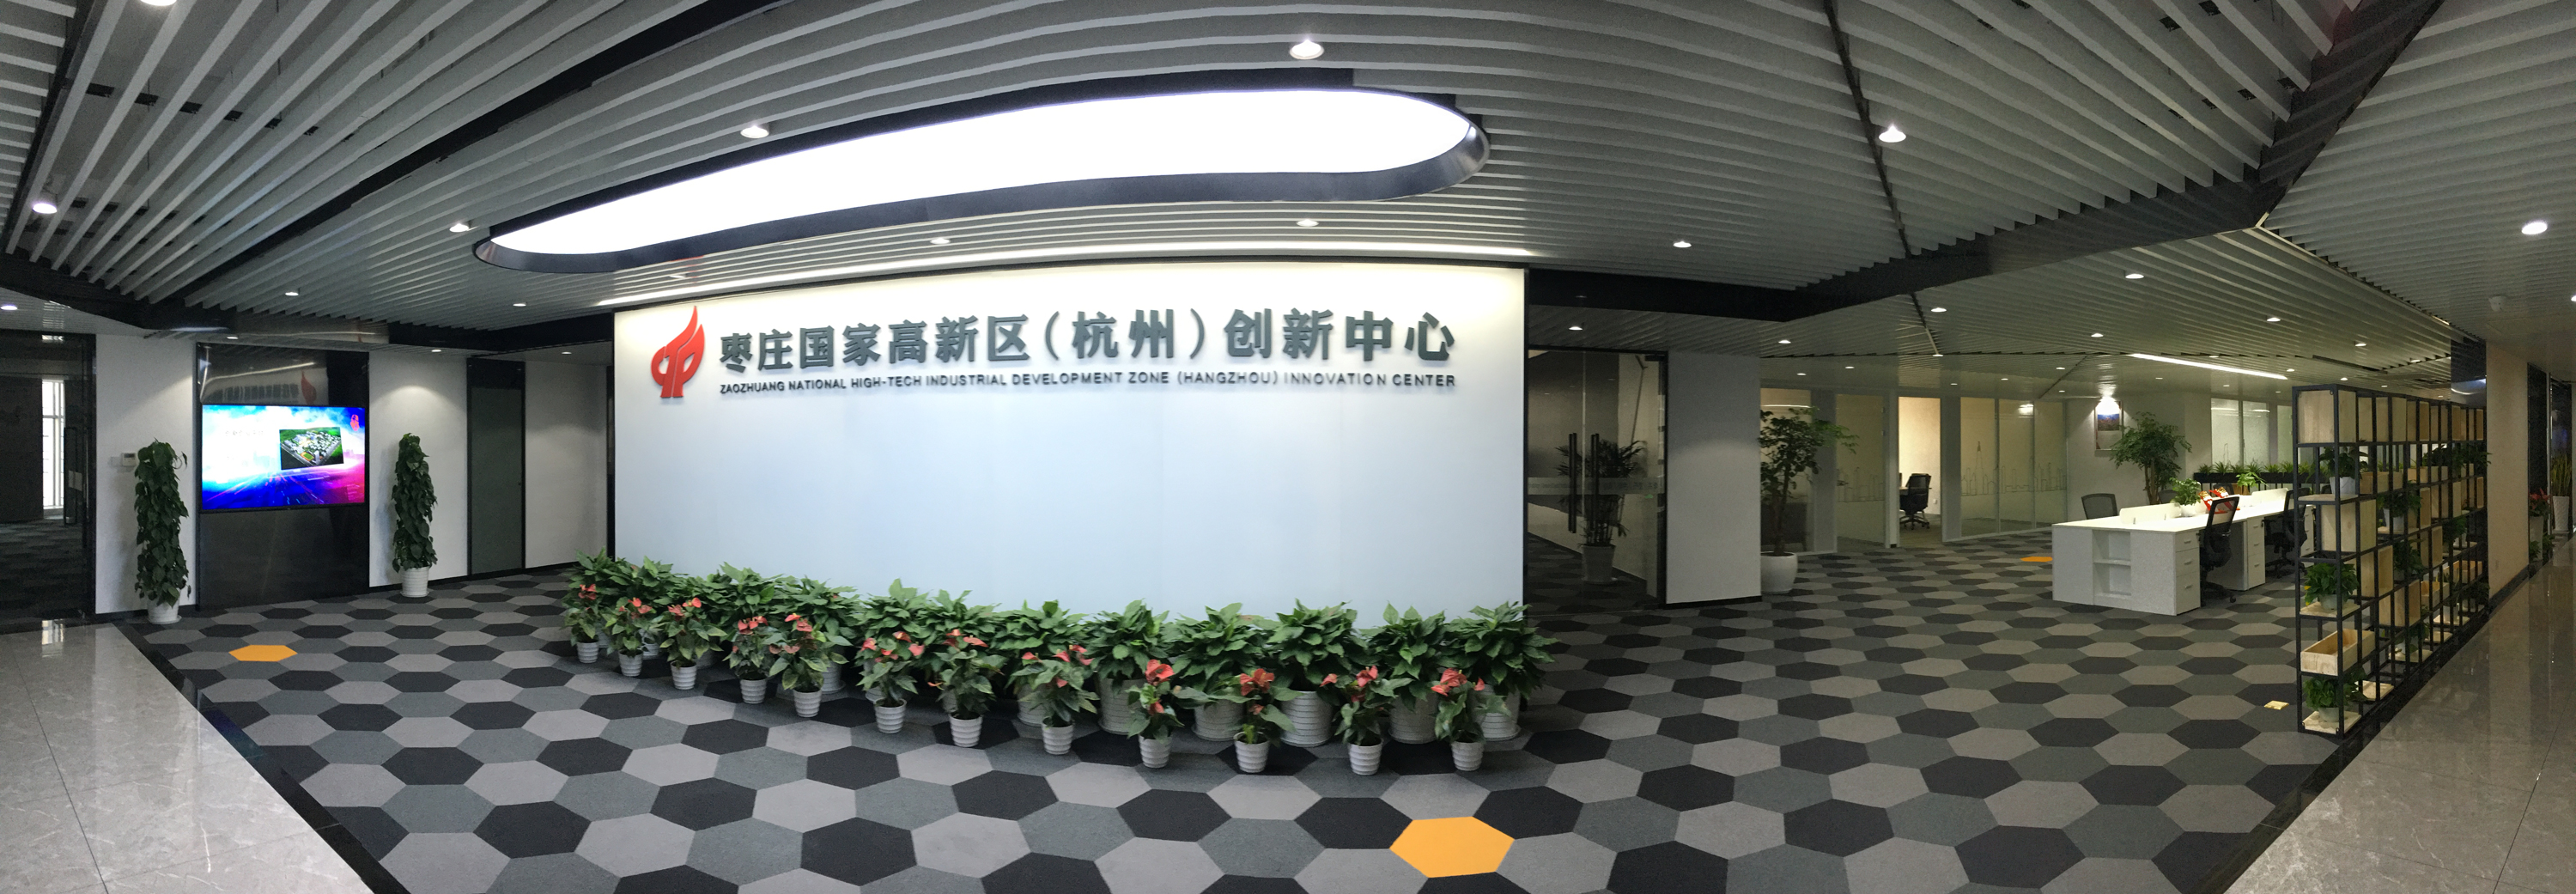 跨省域协作——枣庄高新区（杭州）创新中心在蓄势待启中快速推进